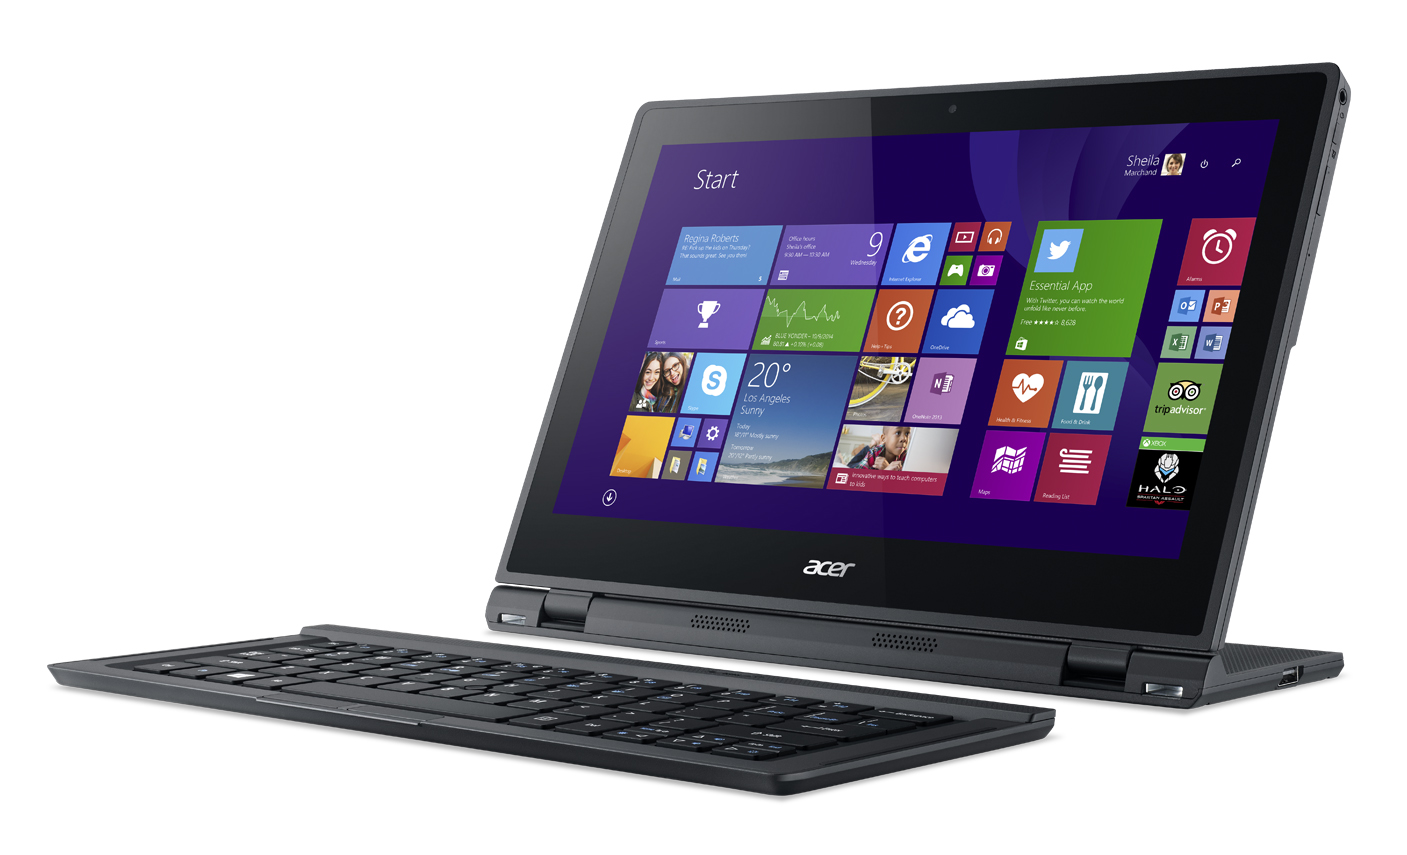 Acer présente l’ordi-tablette dotée d’une autonomie de 8 heures